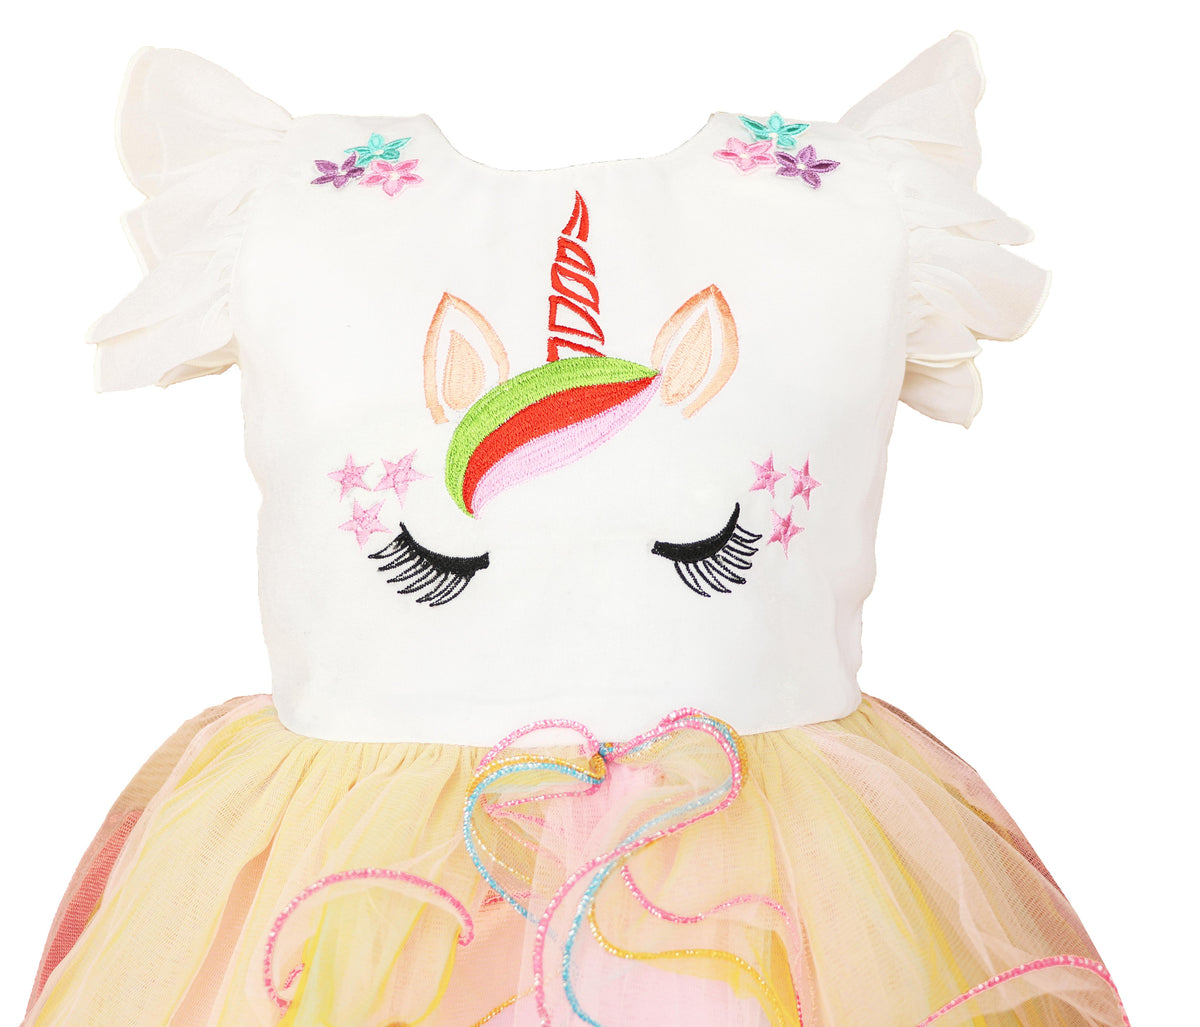 My Lil Princess Unicorn Ball Dress Side View